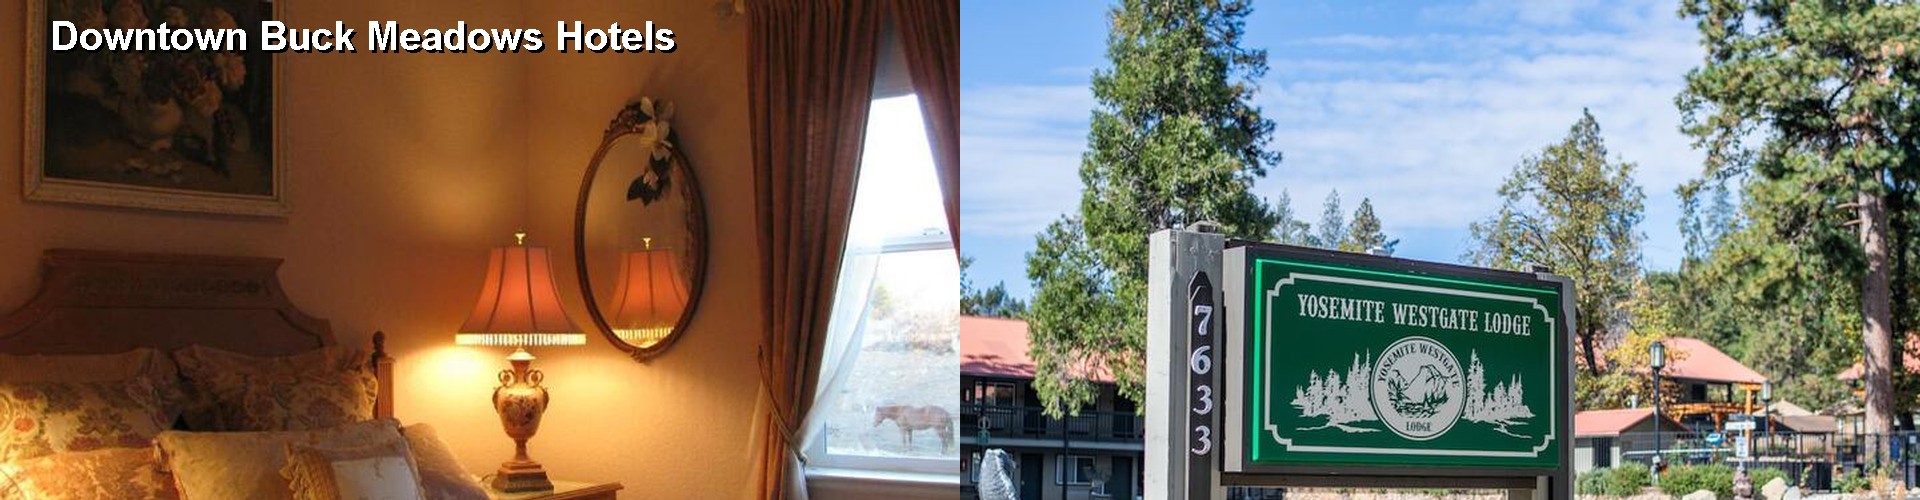 5 Best Hotels near Downtown Buck Meadows